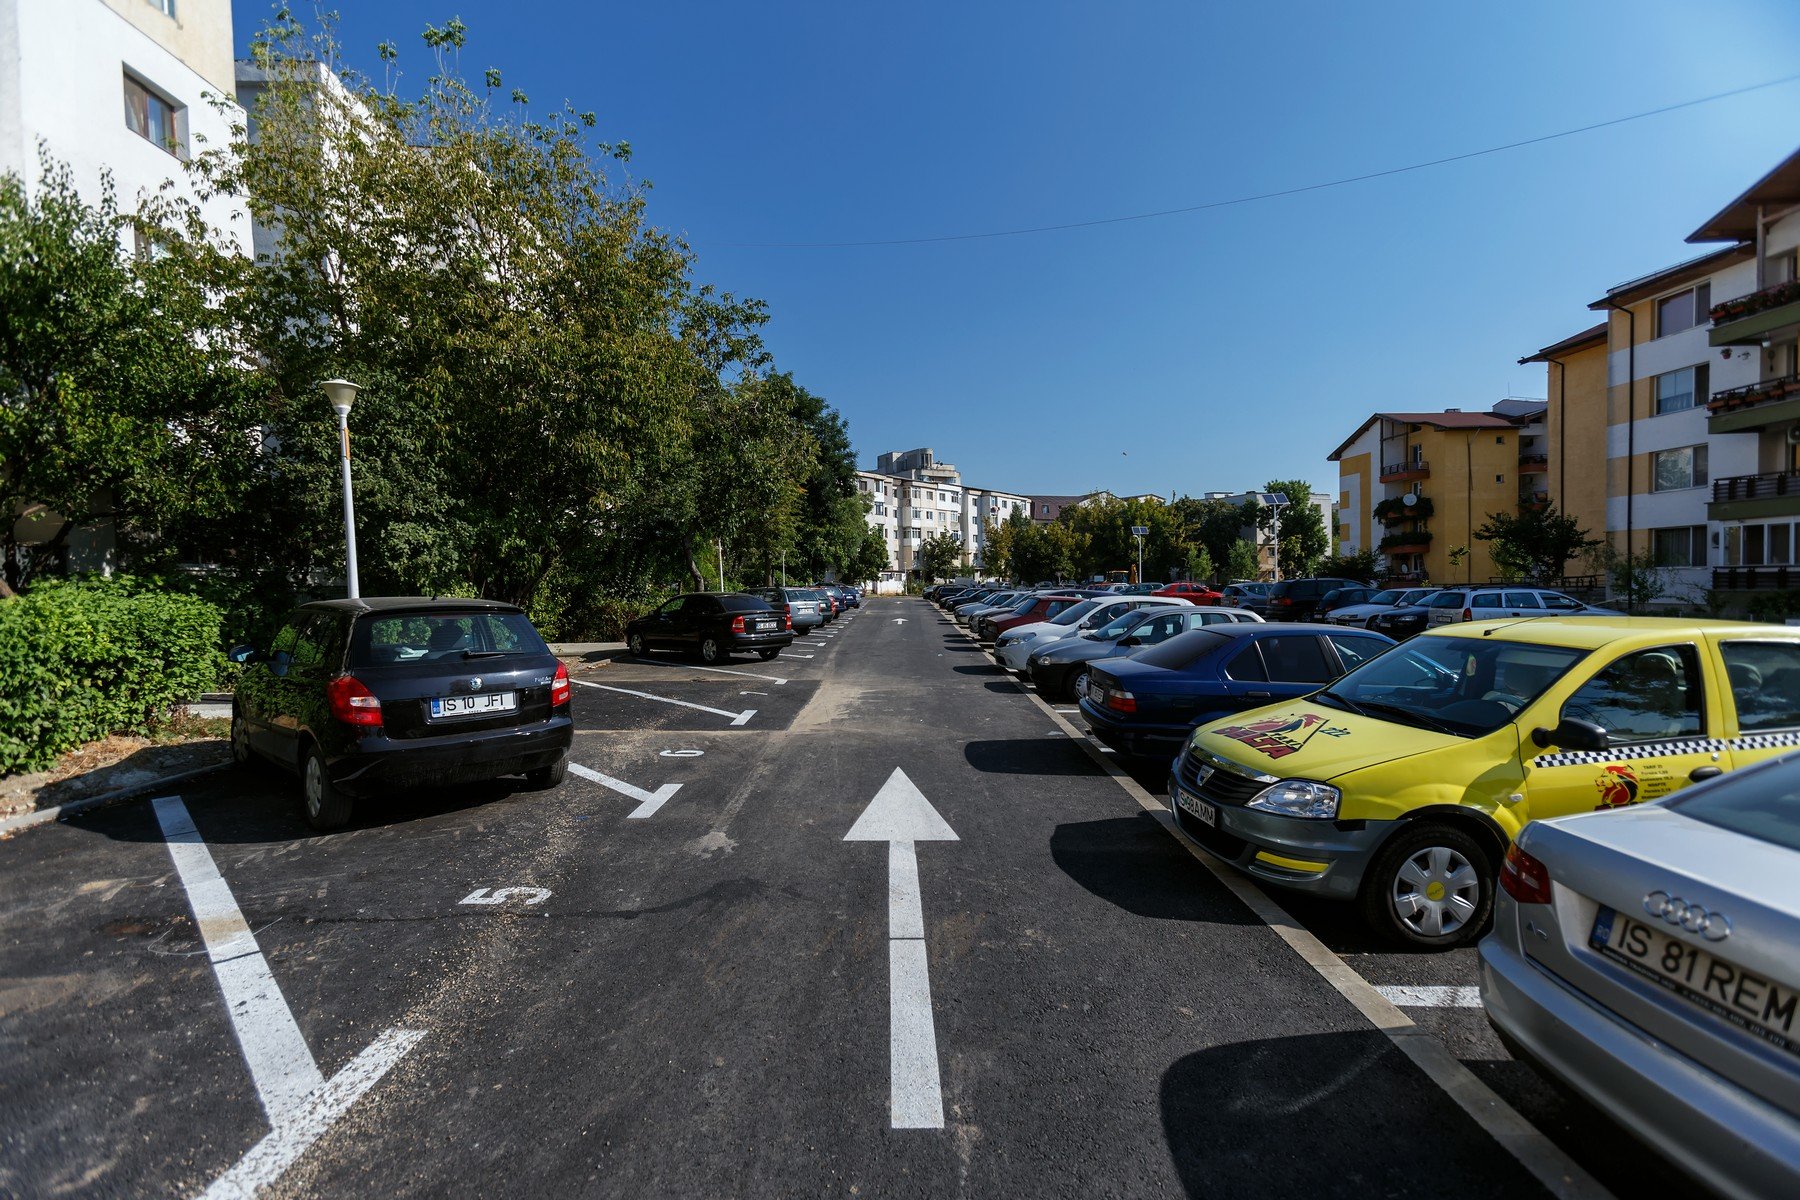  Zece licitaţii pentru 21 de locuri în parcările dintre blocuri din municipiul Iași